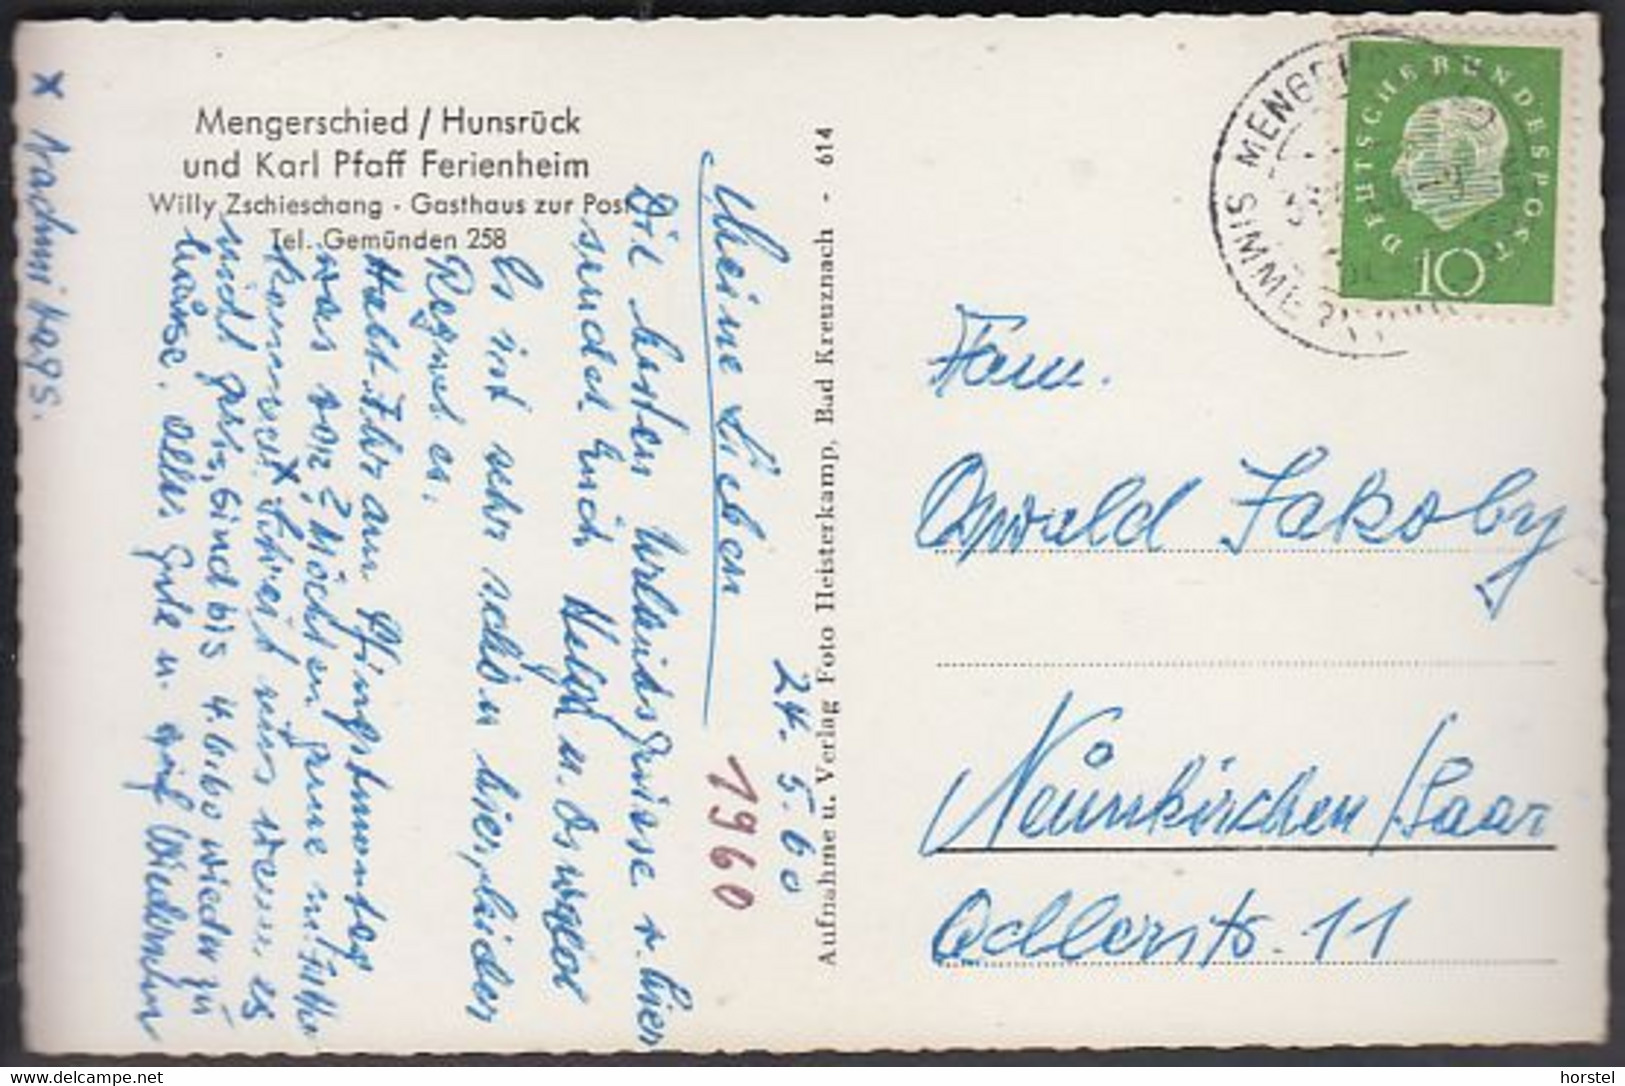 D-55490 Mengerschied - Hunsrück - Karl Pfaff Ferienheim - Gasthaus Zur Post - Stamp 1960 - Simmern